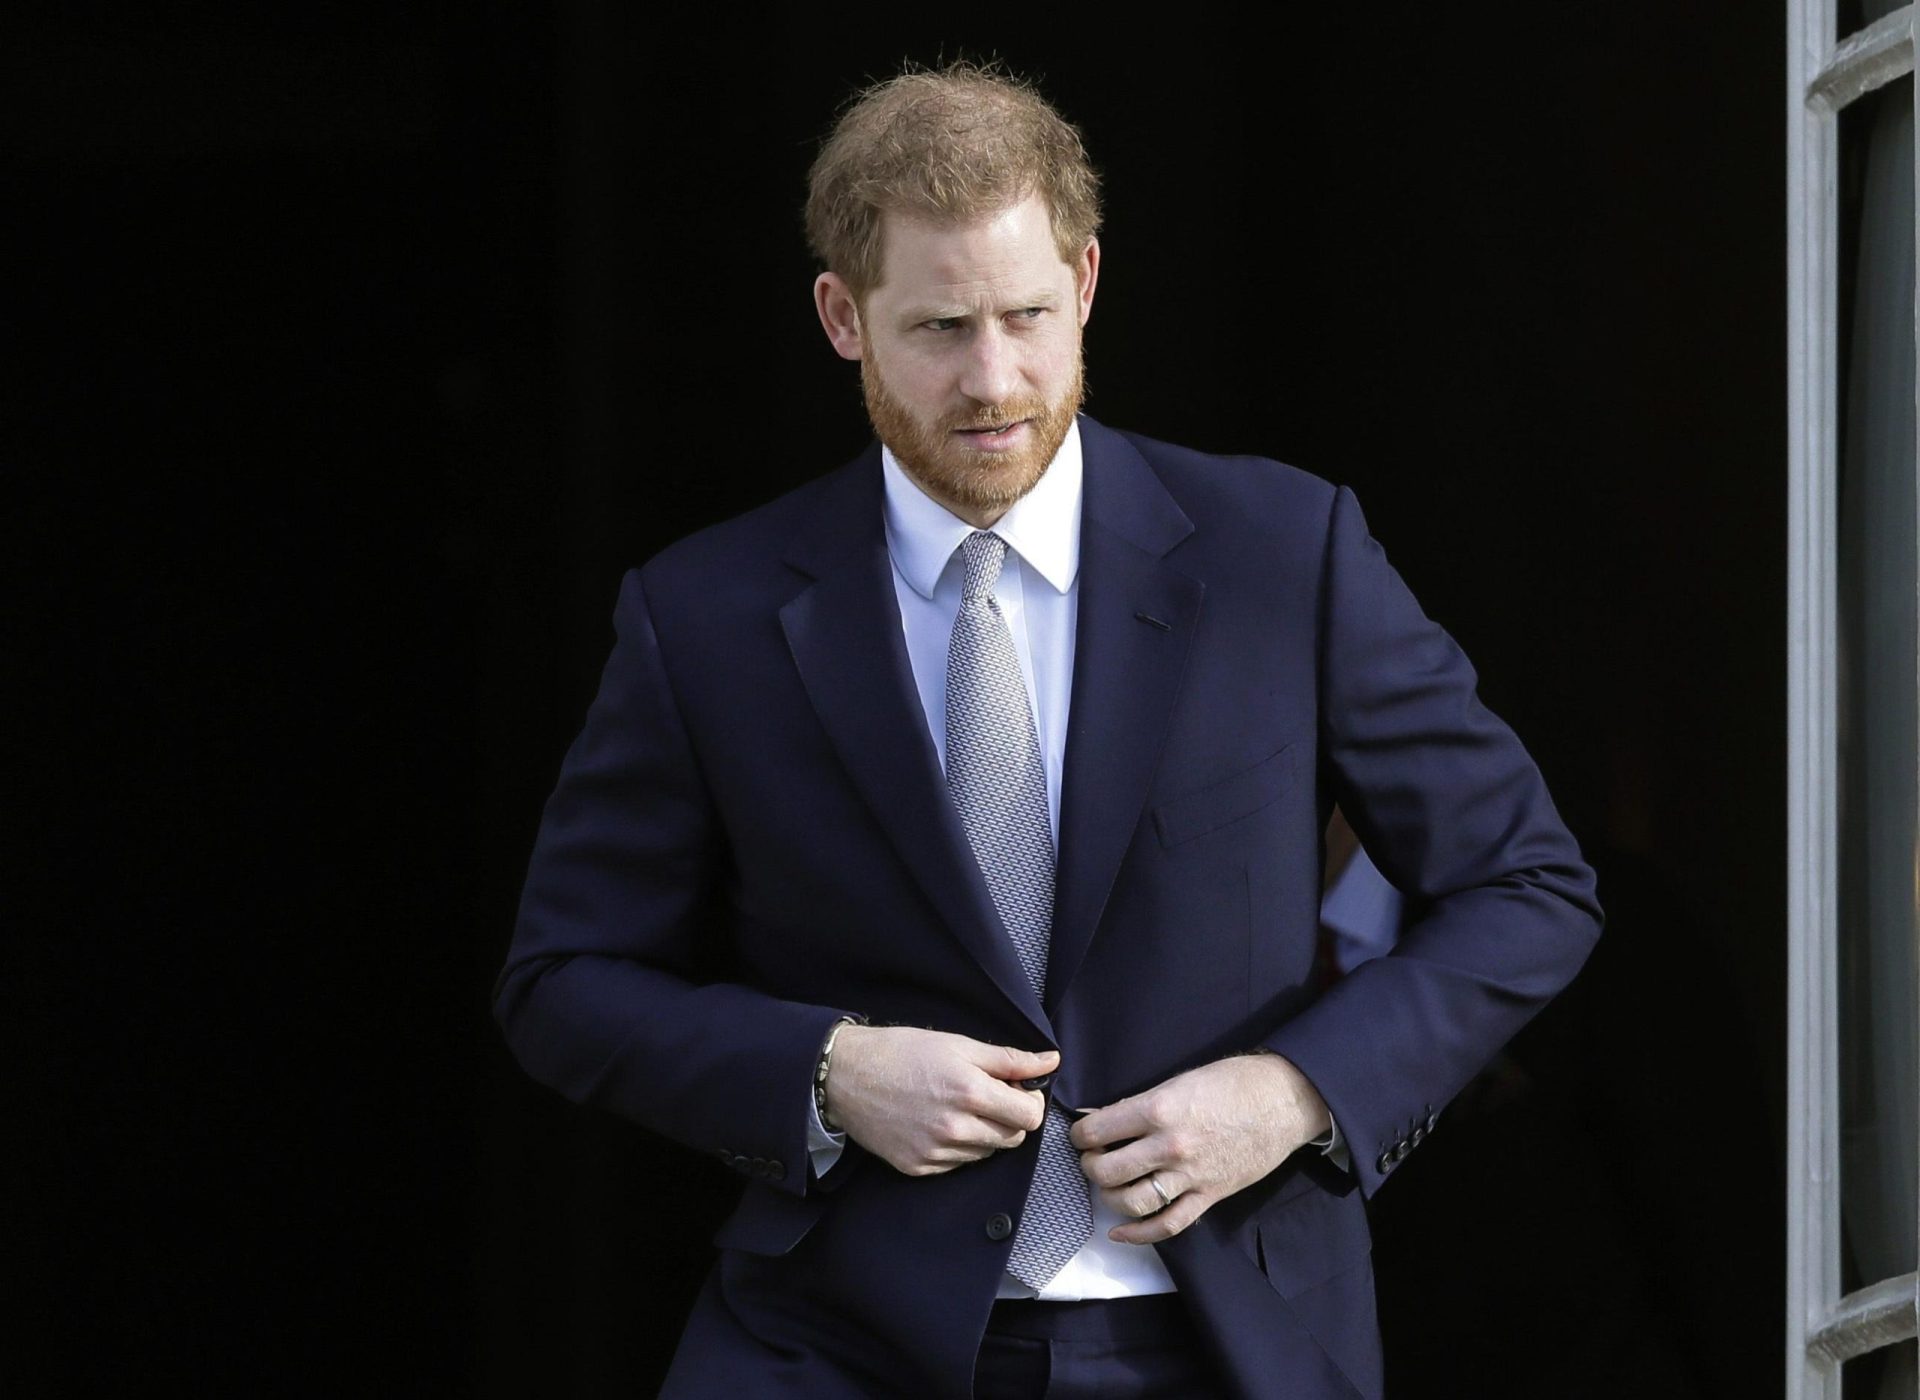 El juez dice que el príncipe Harry puede demandar al gobierno británico por el plan de seguridad